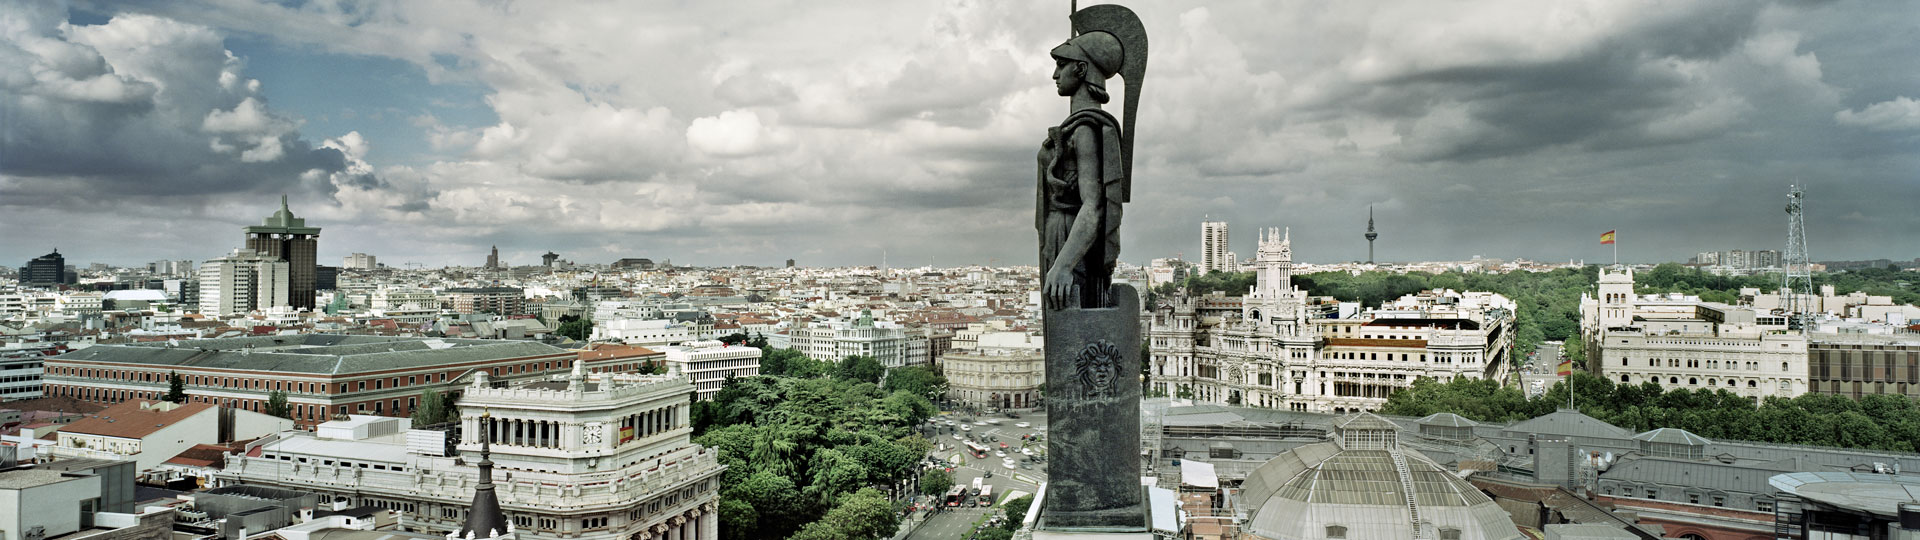 Вид на Мадрид с крыши здания Общества изящных искусств